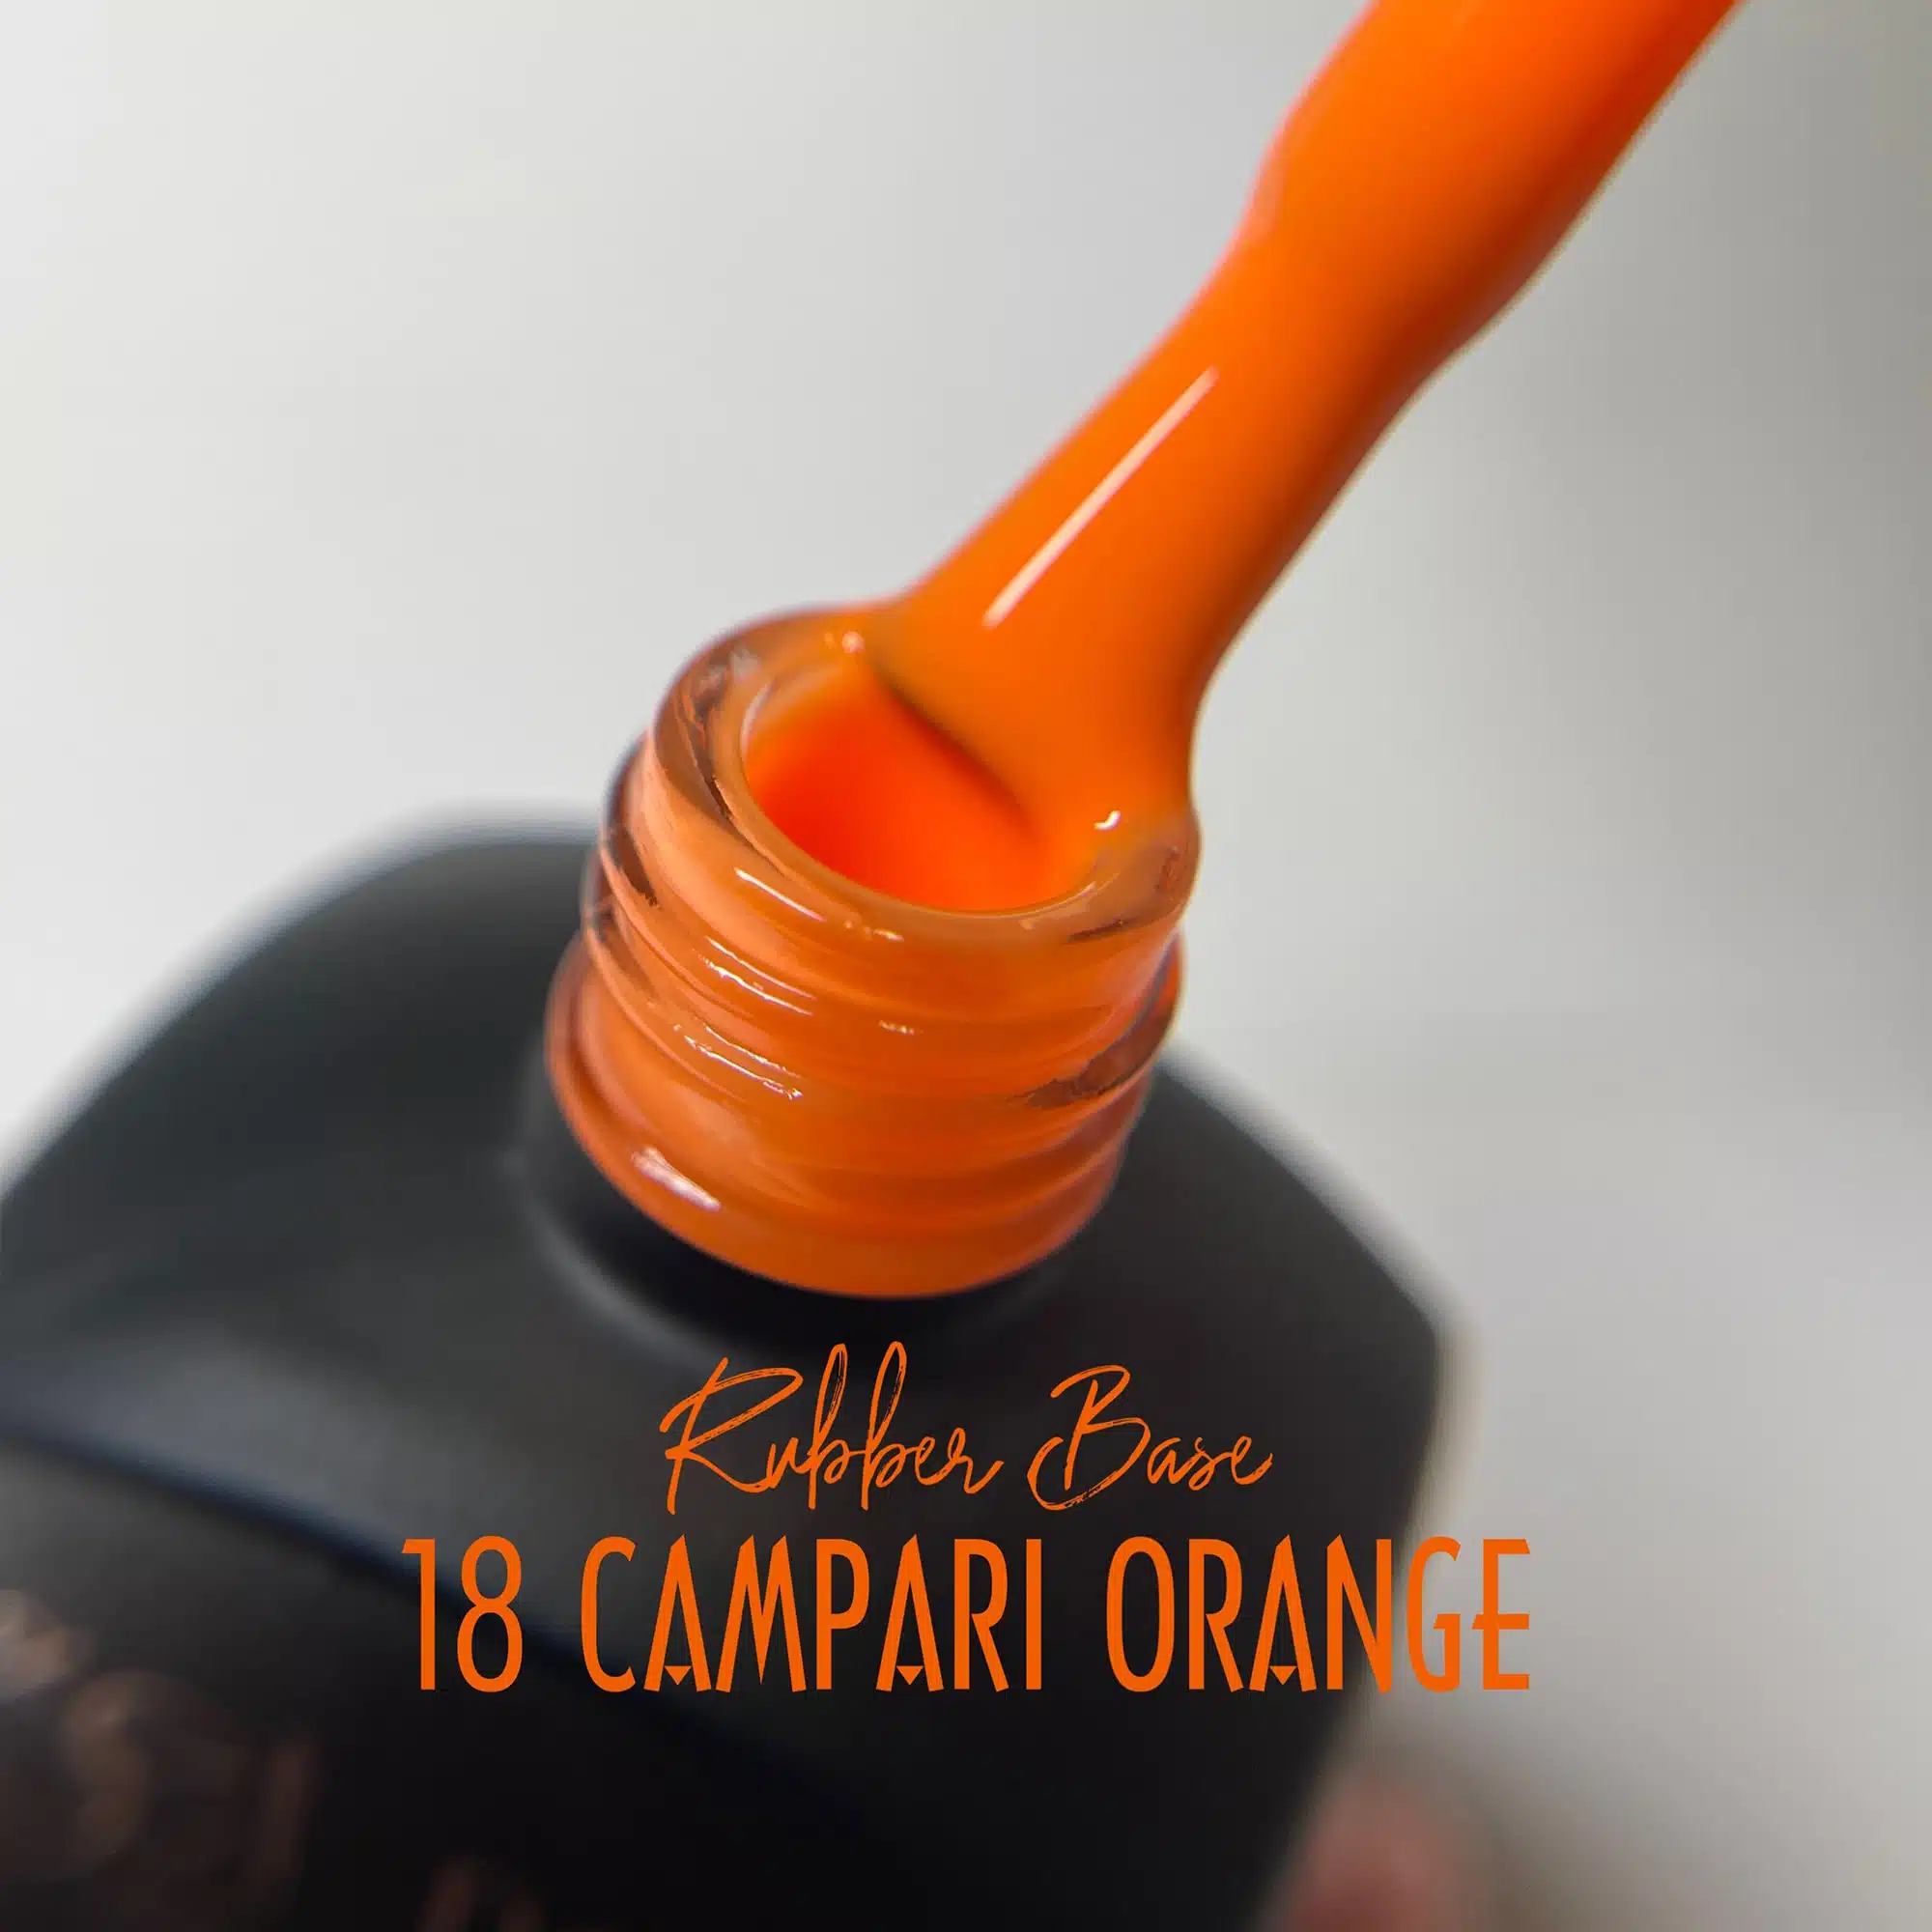 Get Nails Austria - GetLac Rubber Base 18 Campari Orange 15g